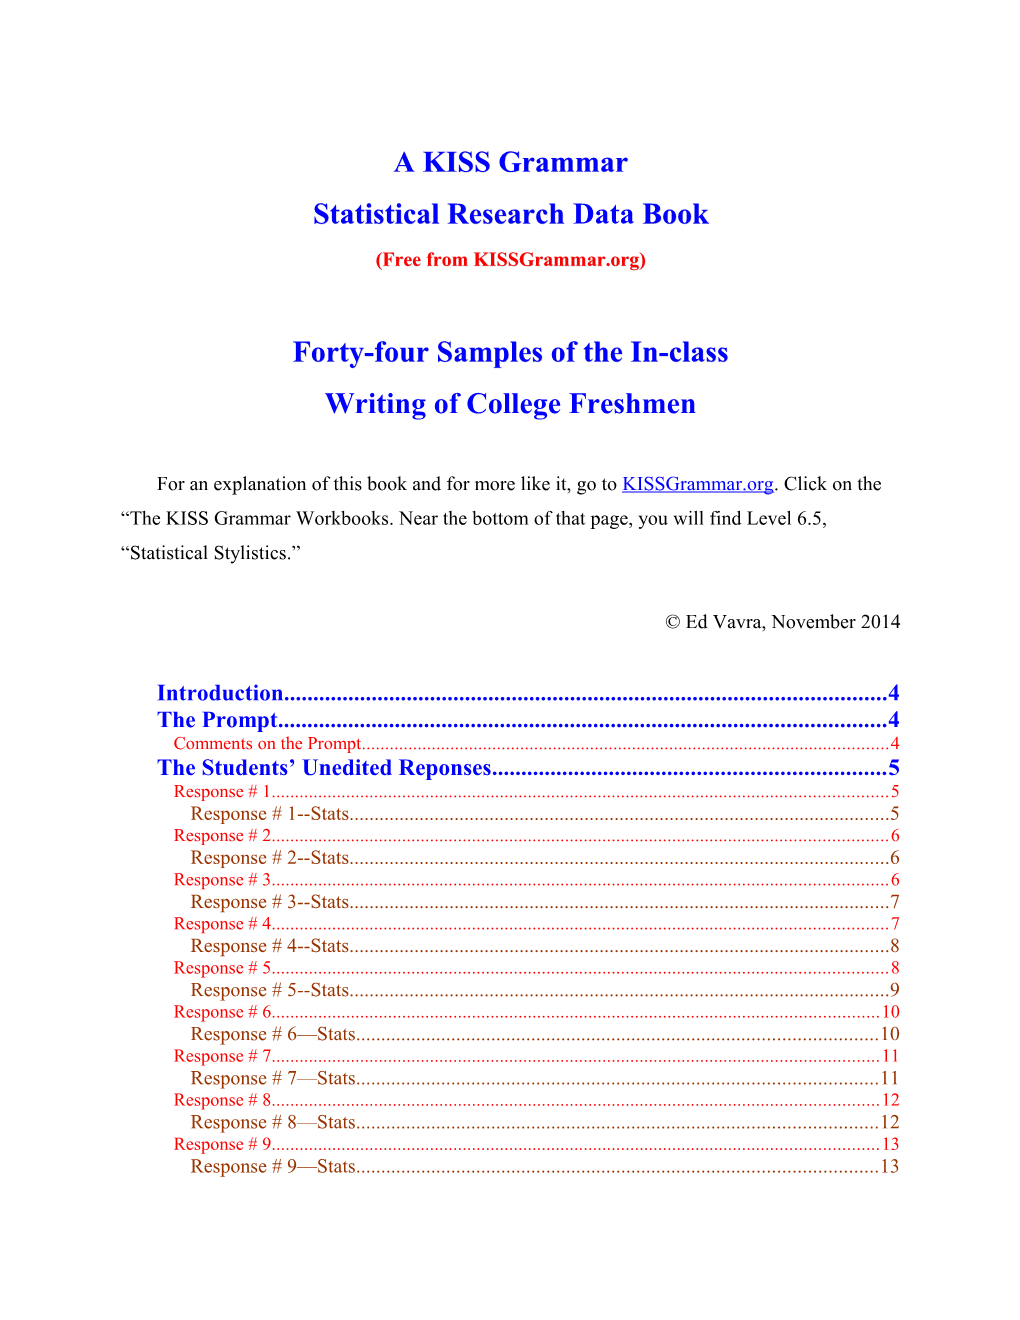 Statistical Research Data Book